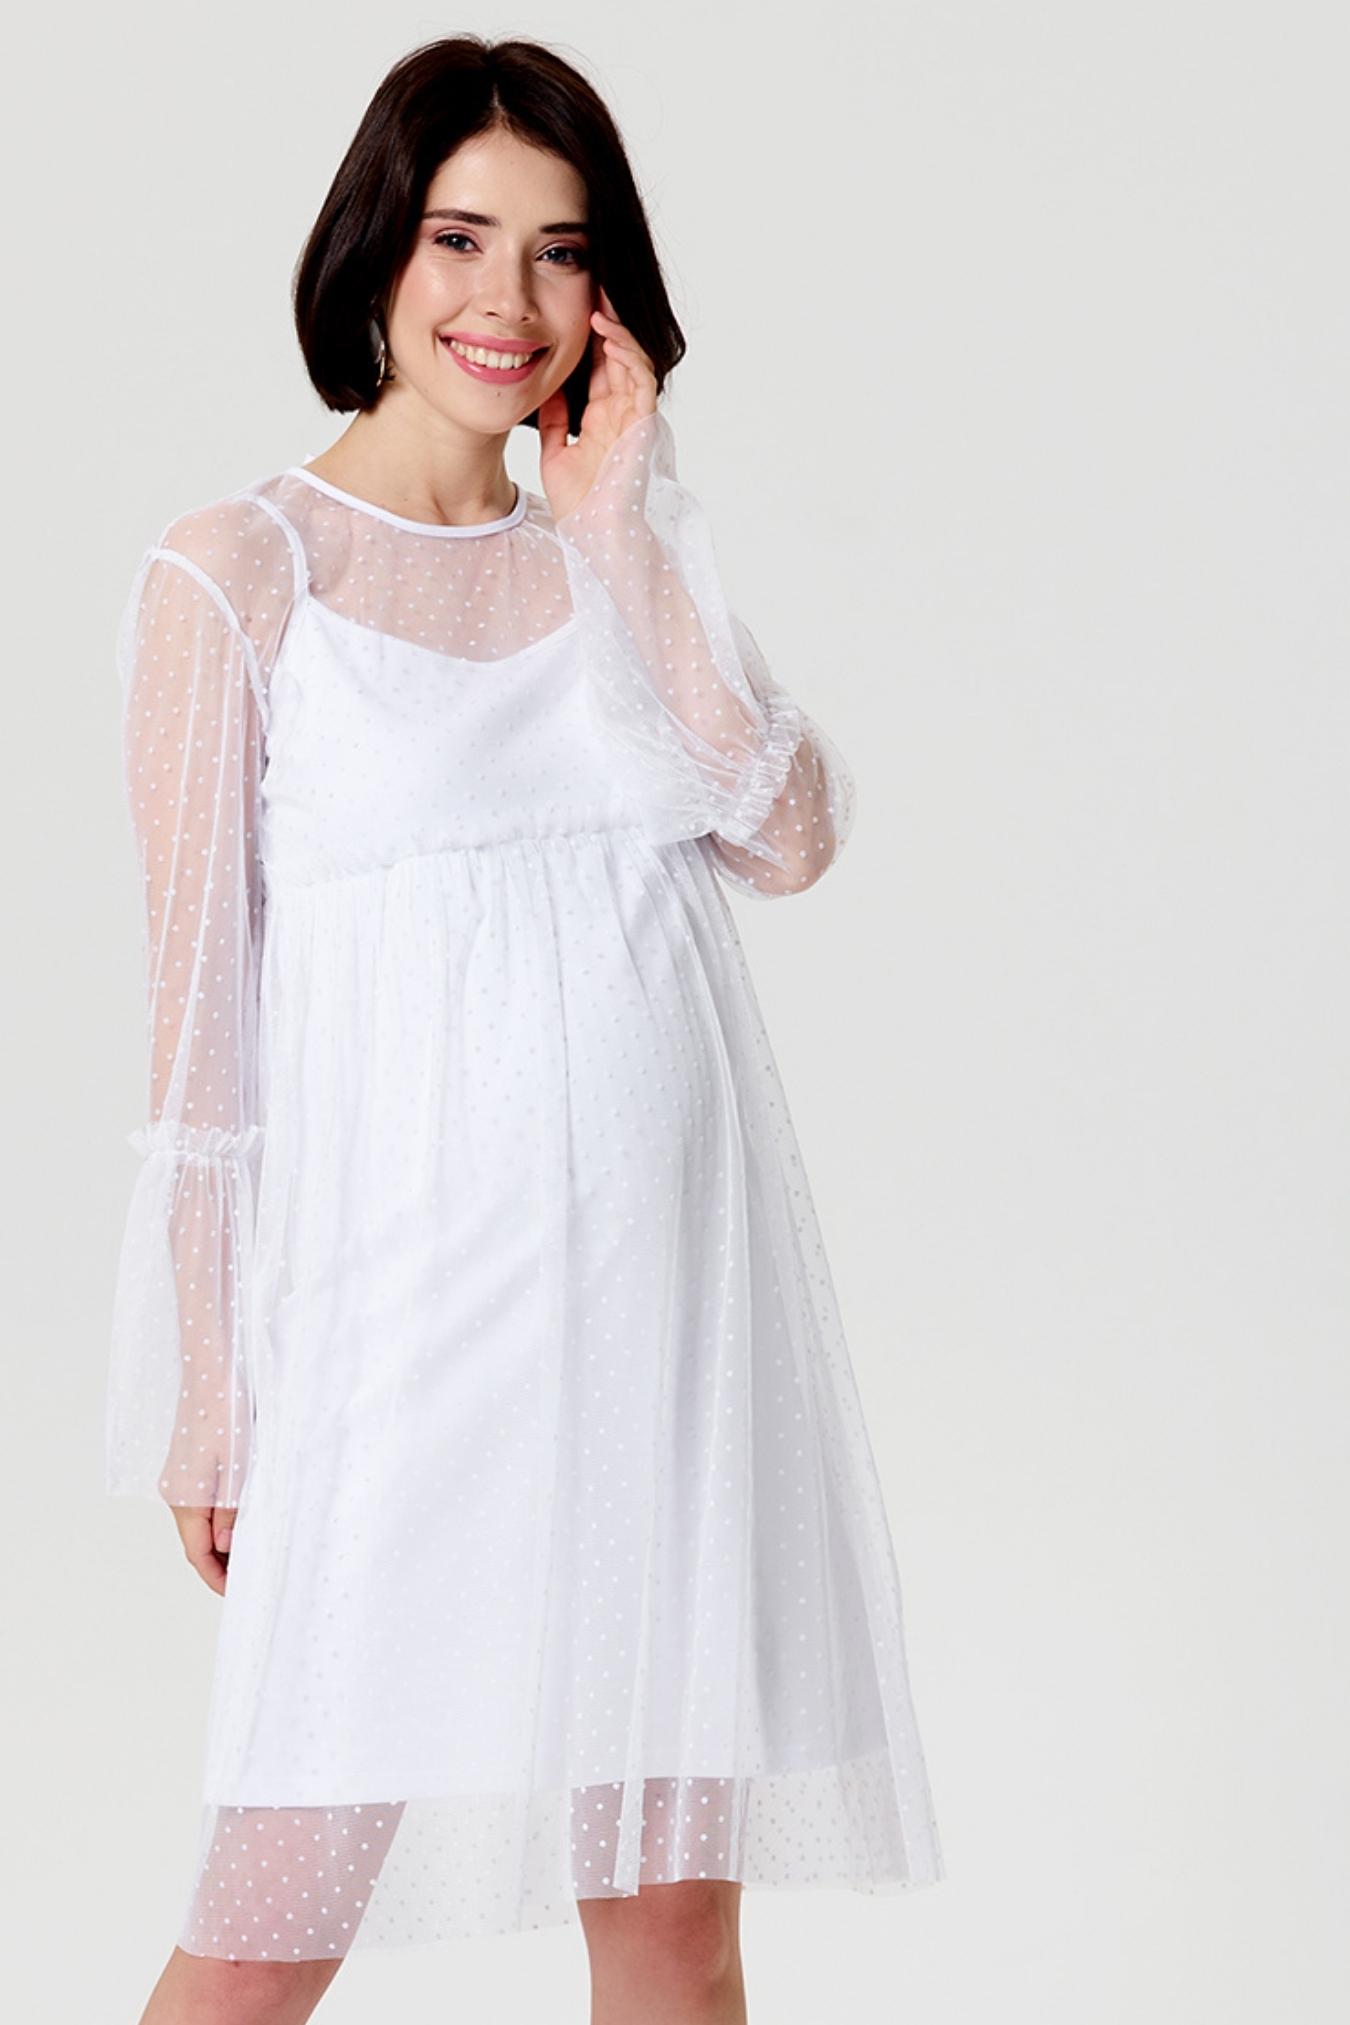 Платье для беременных белое свадебное нарядное праздничное вечернее одежда для будущих мам / Happy Moms